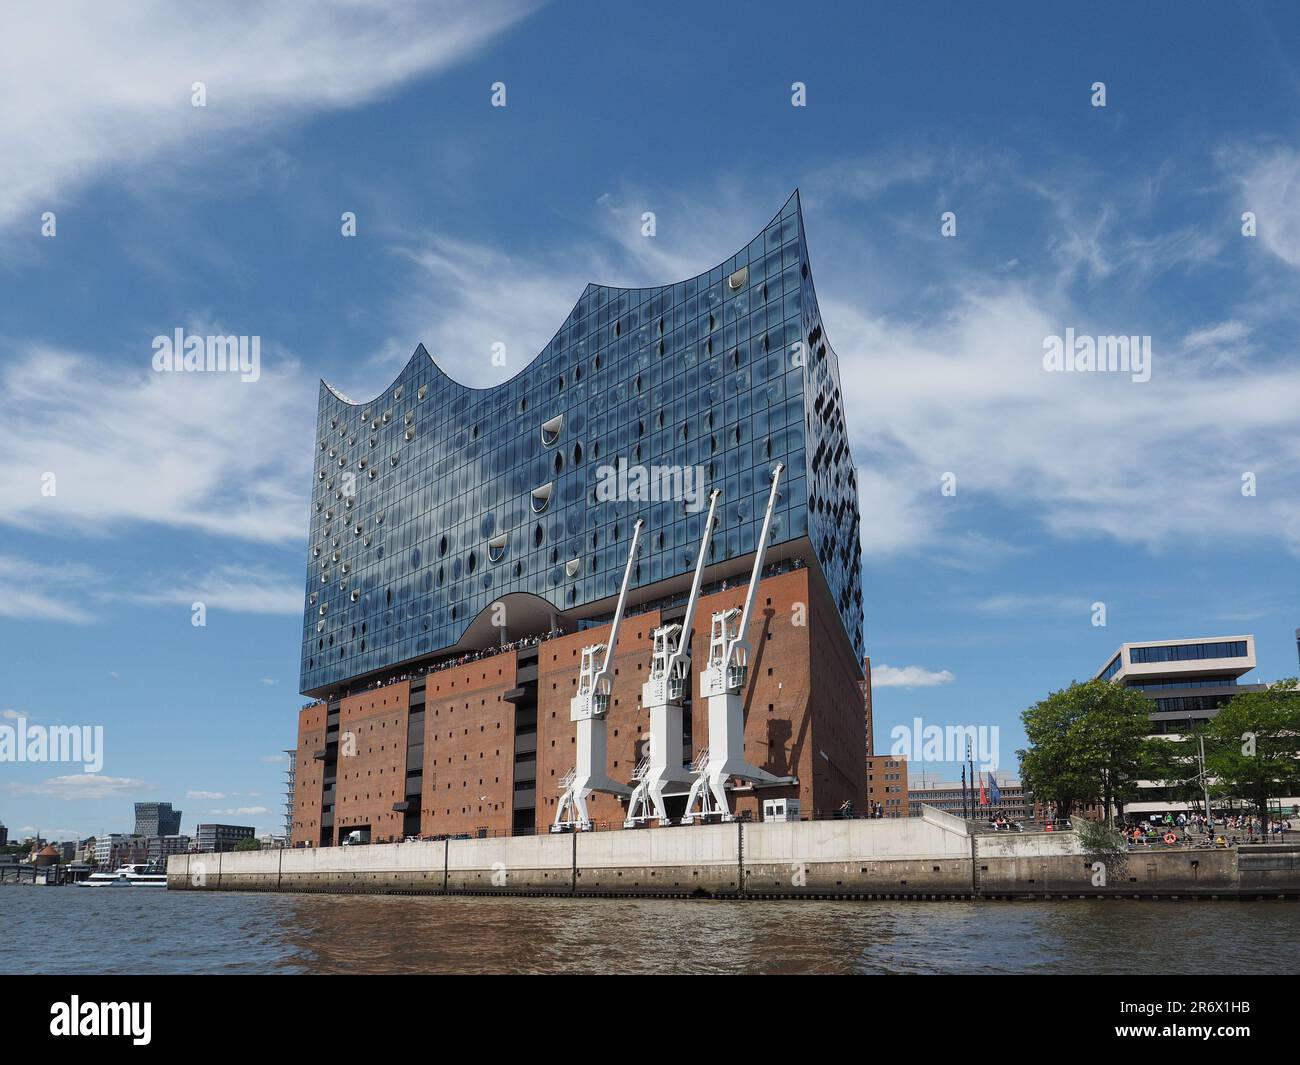 Elbphilharmonie-Konzerthalle in Hamburg, von der Elbe aus gesehen. Es wurde von den Architekten Herzog und de Meuron entworfen und 2017 eröffnet. Stockfoto